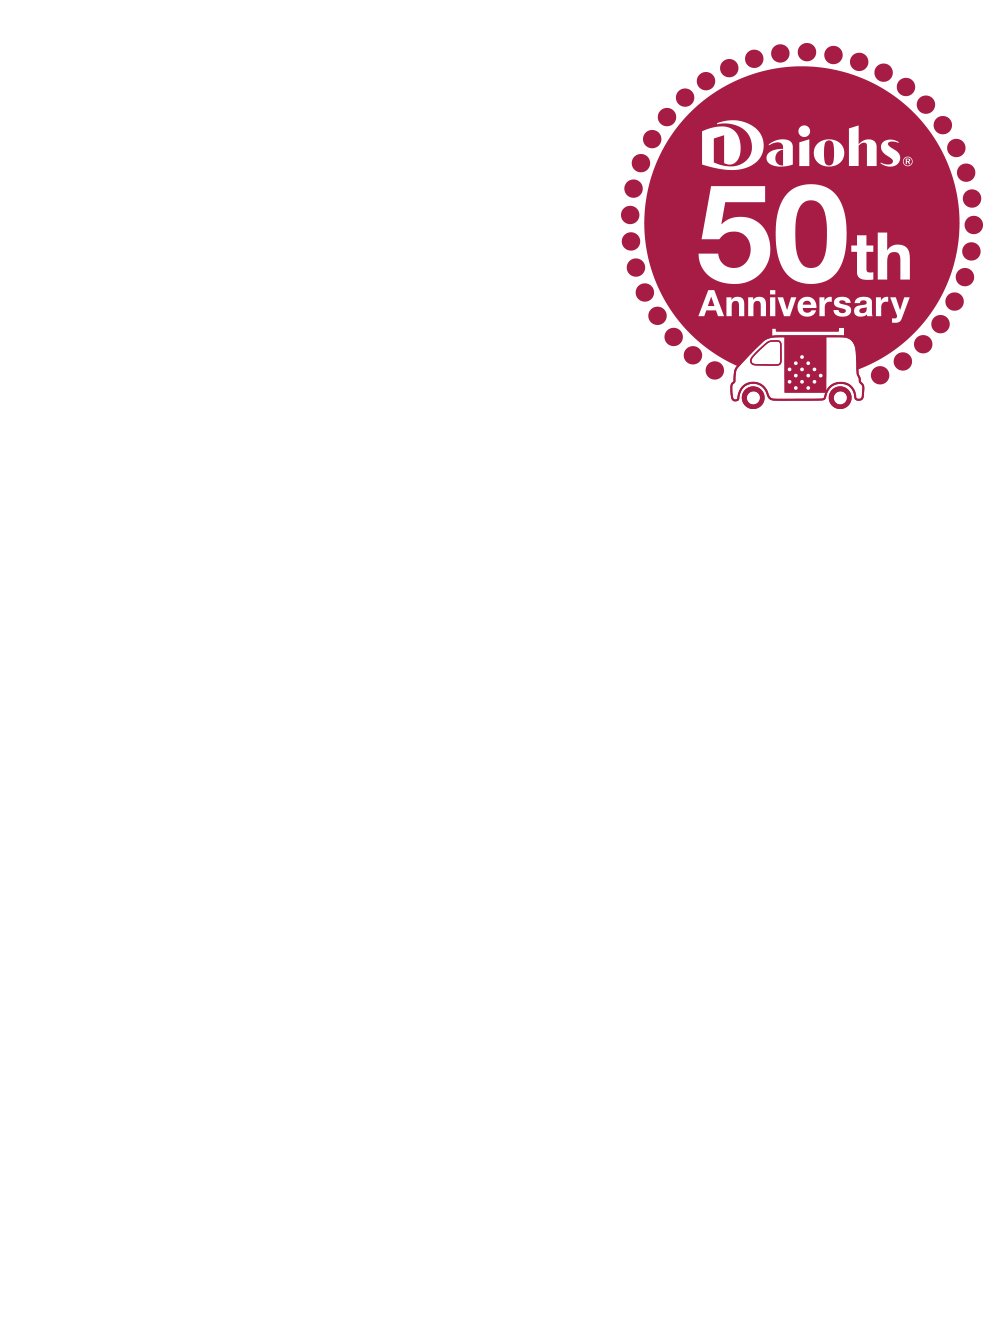 HISTORY OF Daiohs RUN!これからも走り続けます。株式会社ダイオーズ50周年